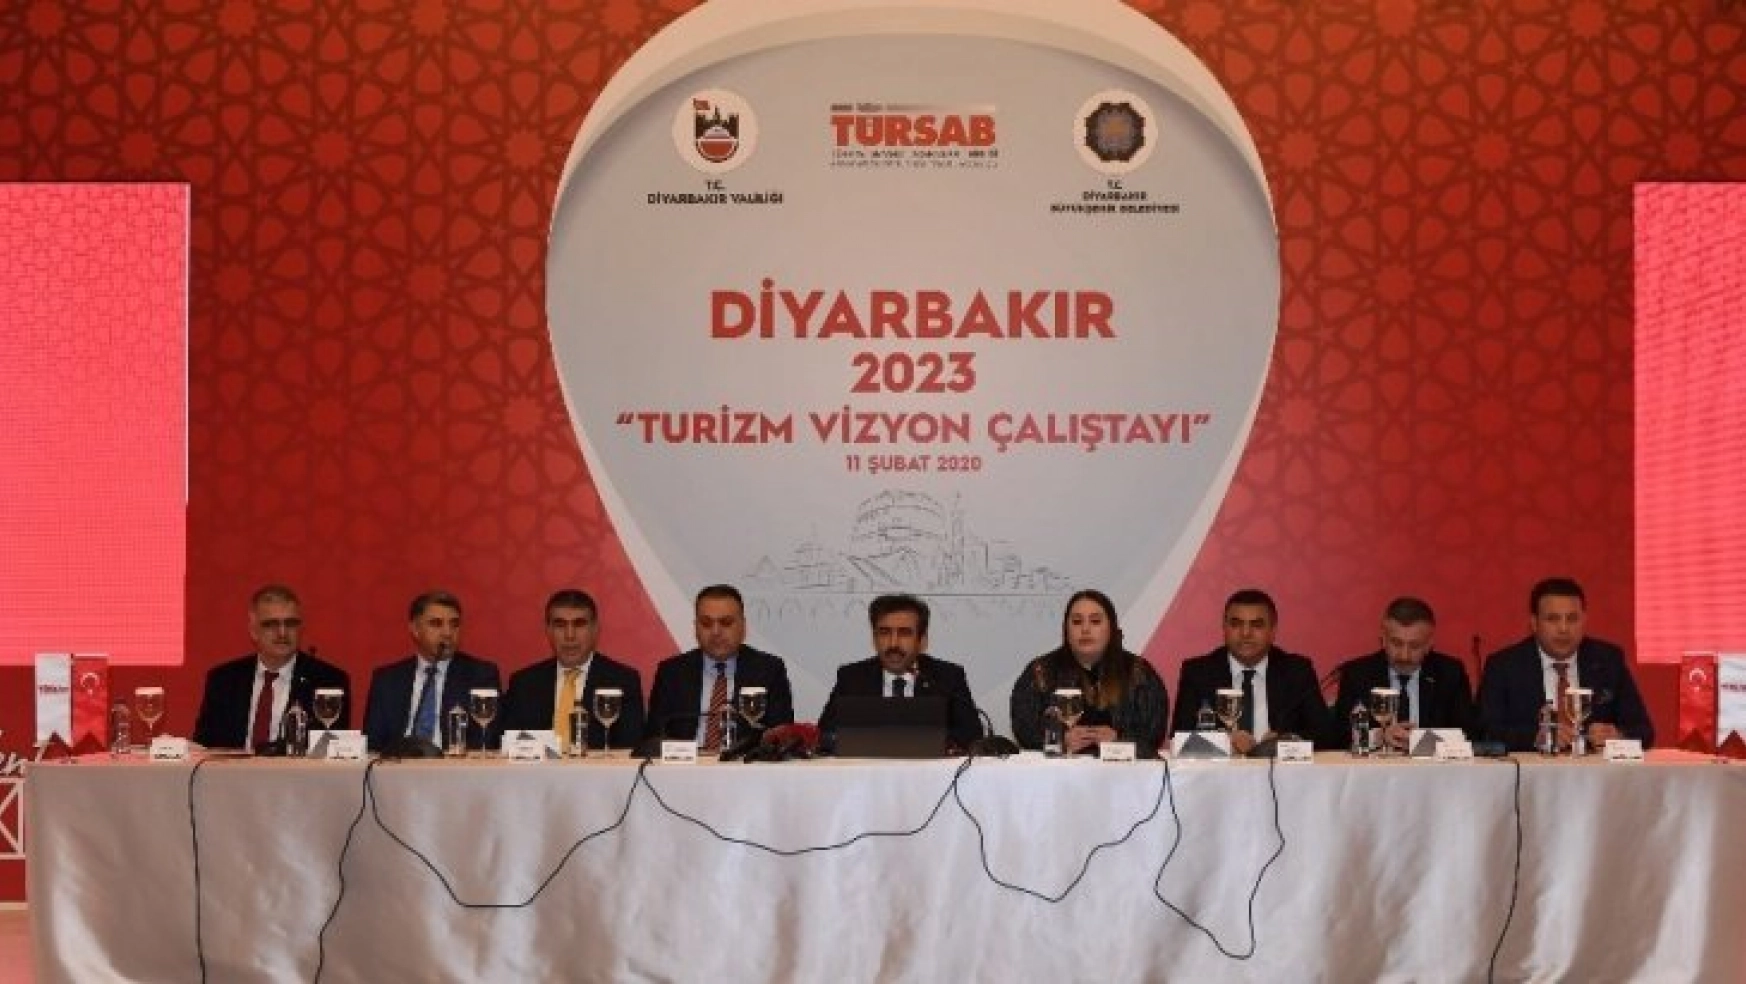 Diyarbakır Valisi Güzeloğlu: 'Diyarbakır'ı hak ettiği konuma ulaştırmak zorunda ve sorumluluğundayız'